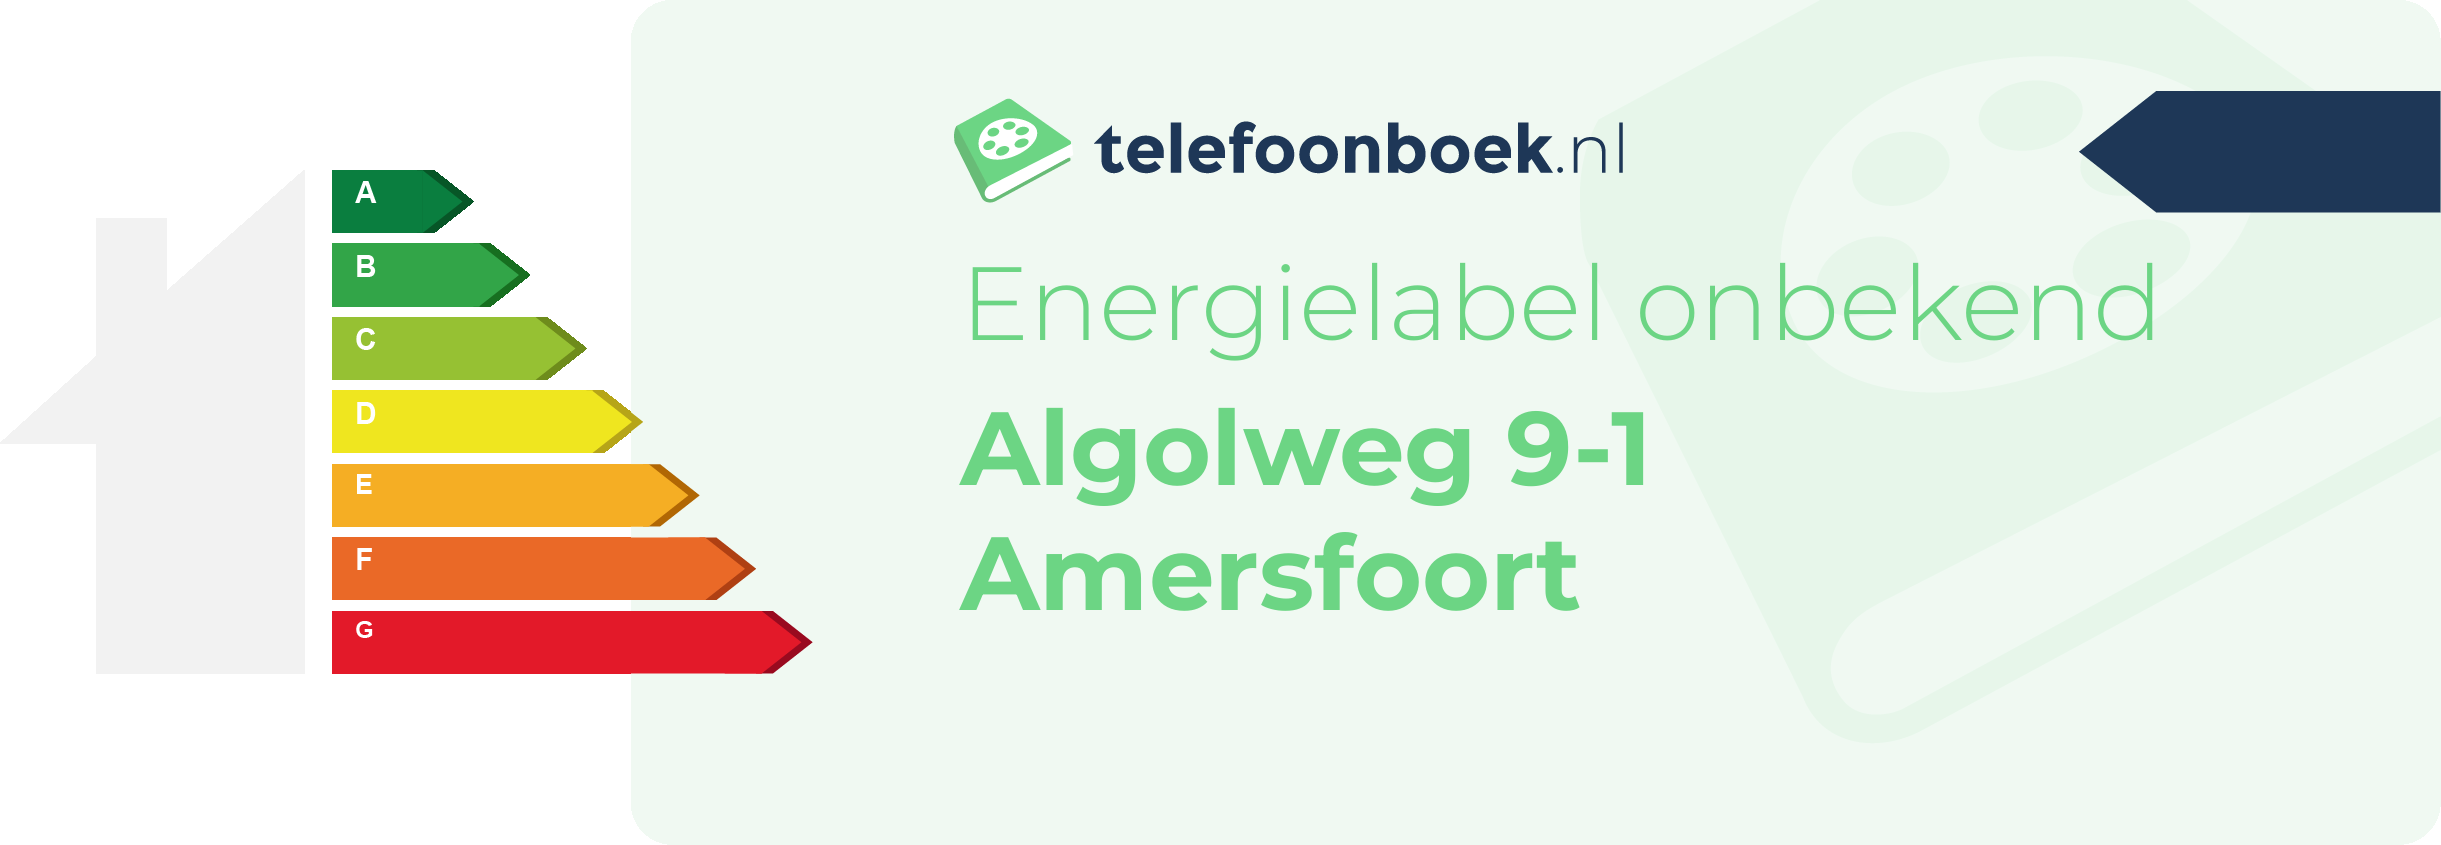 Energielabel Algolweg 9-1 Amersfoort